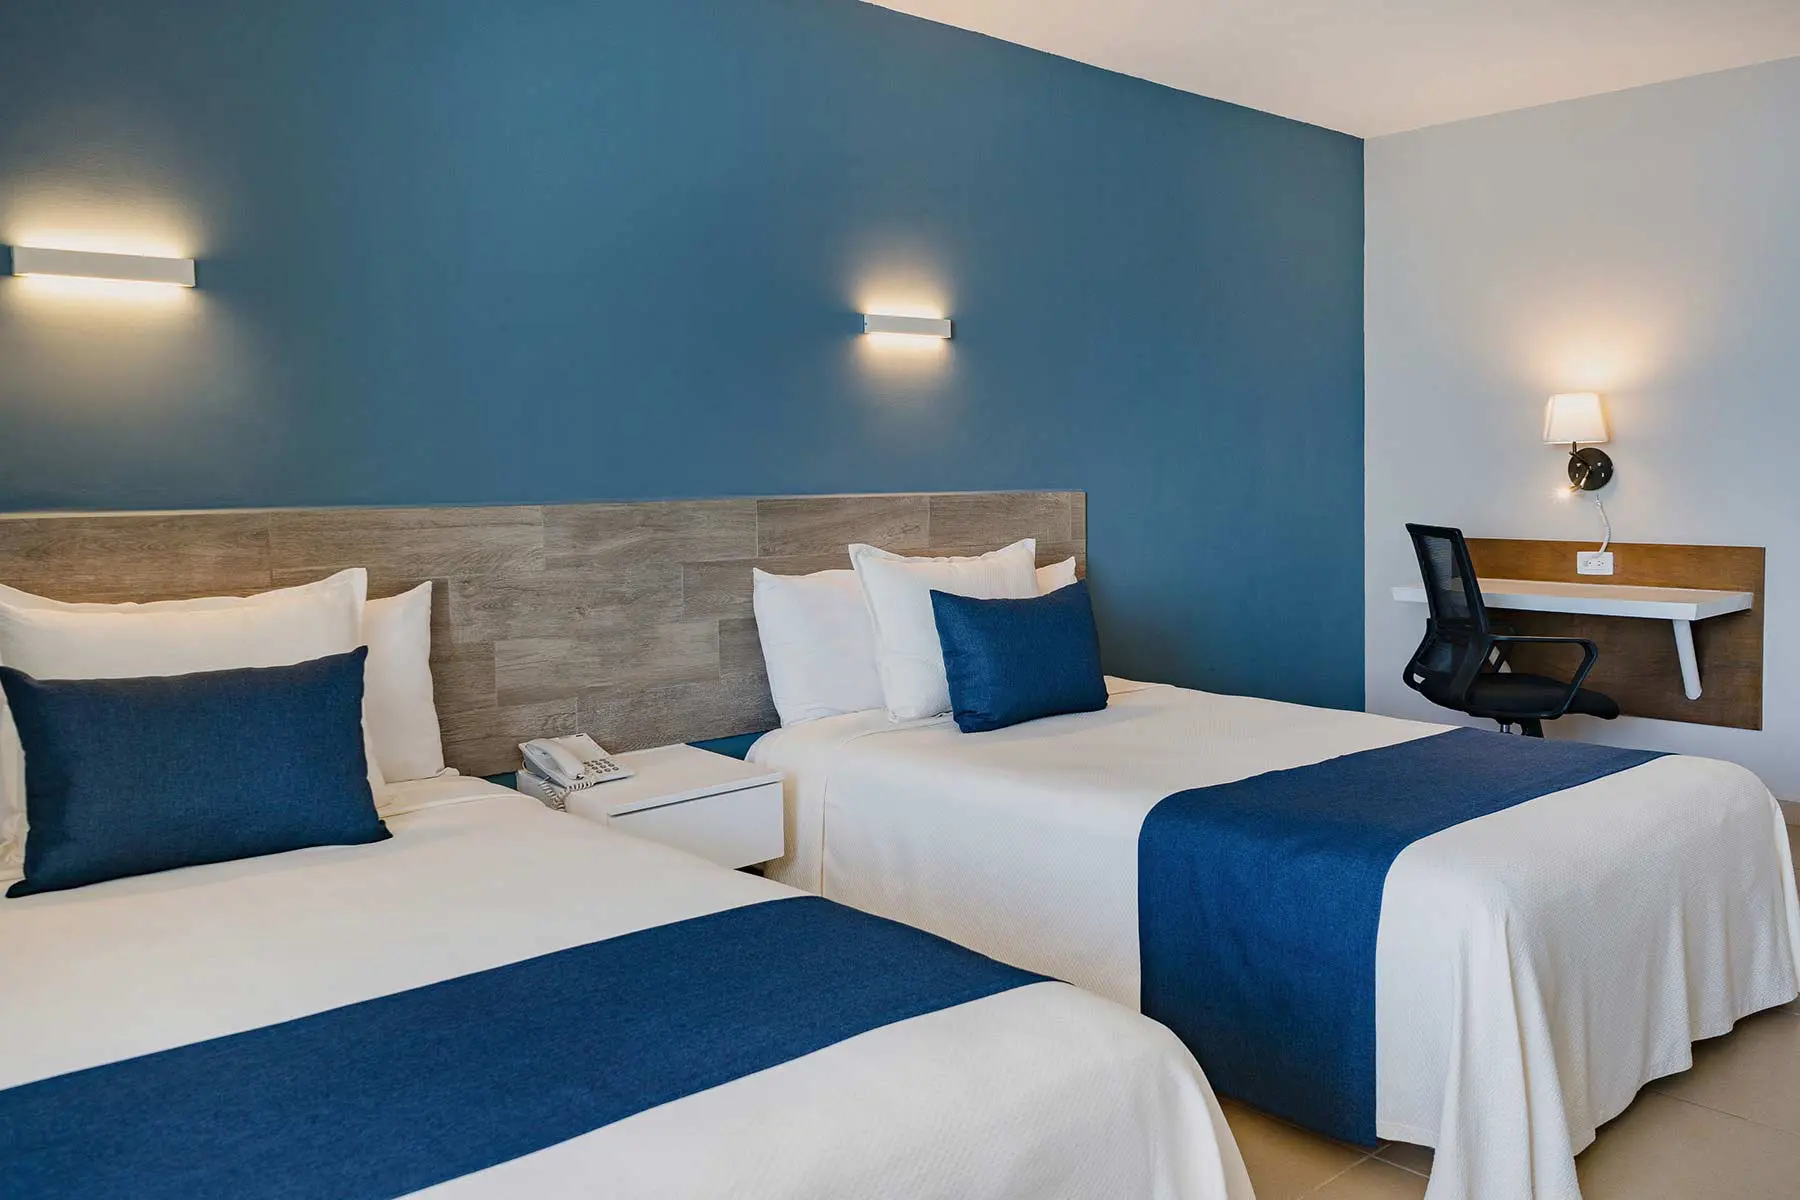 Habitacion con dos camas para cuatro personas en hotel Star Palace Mazatlan